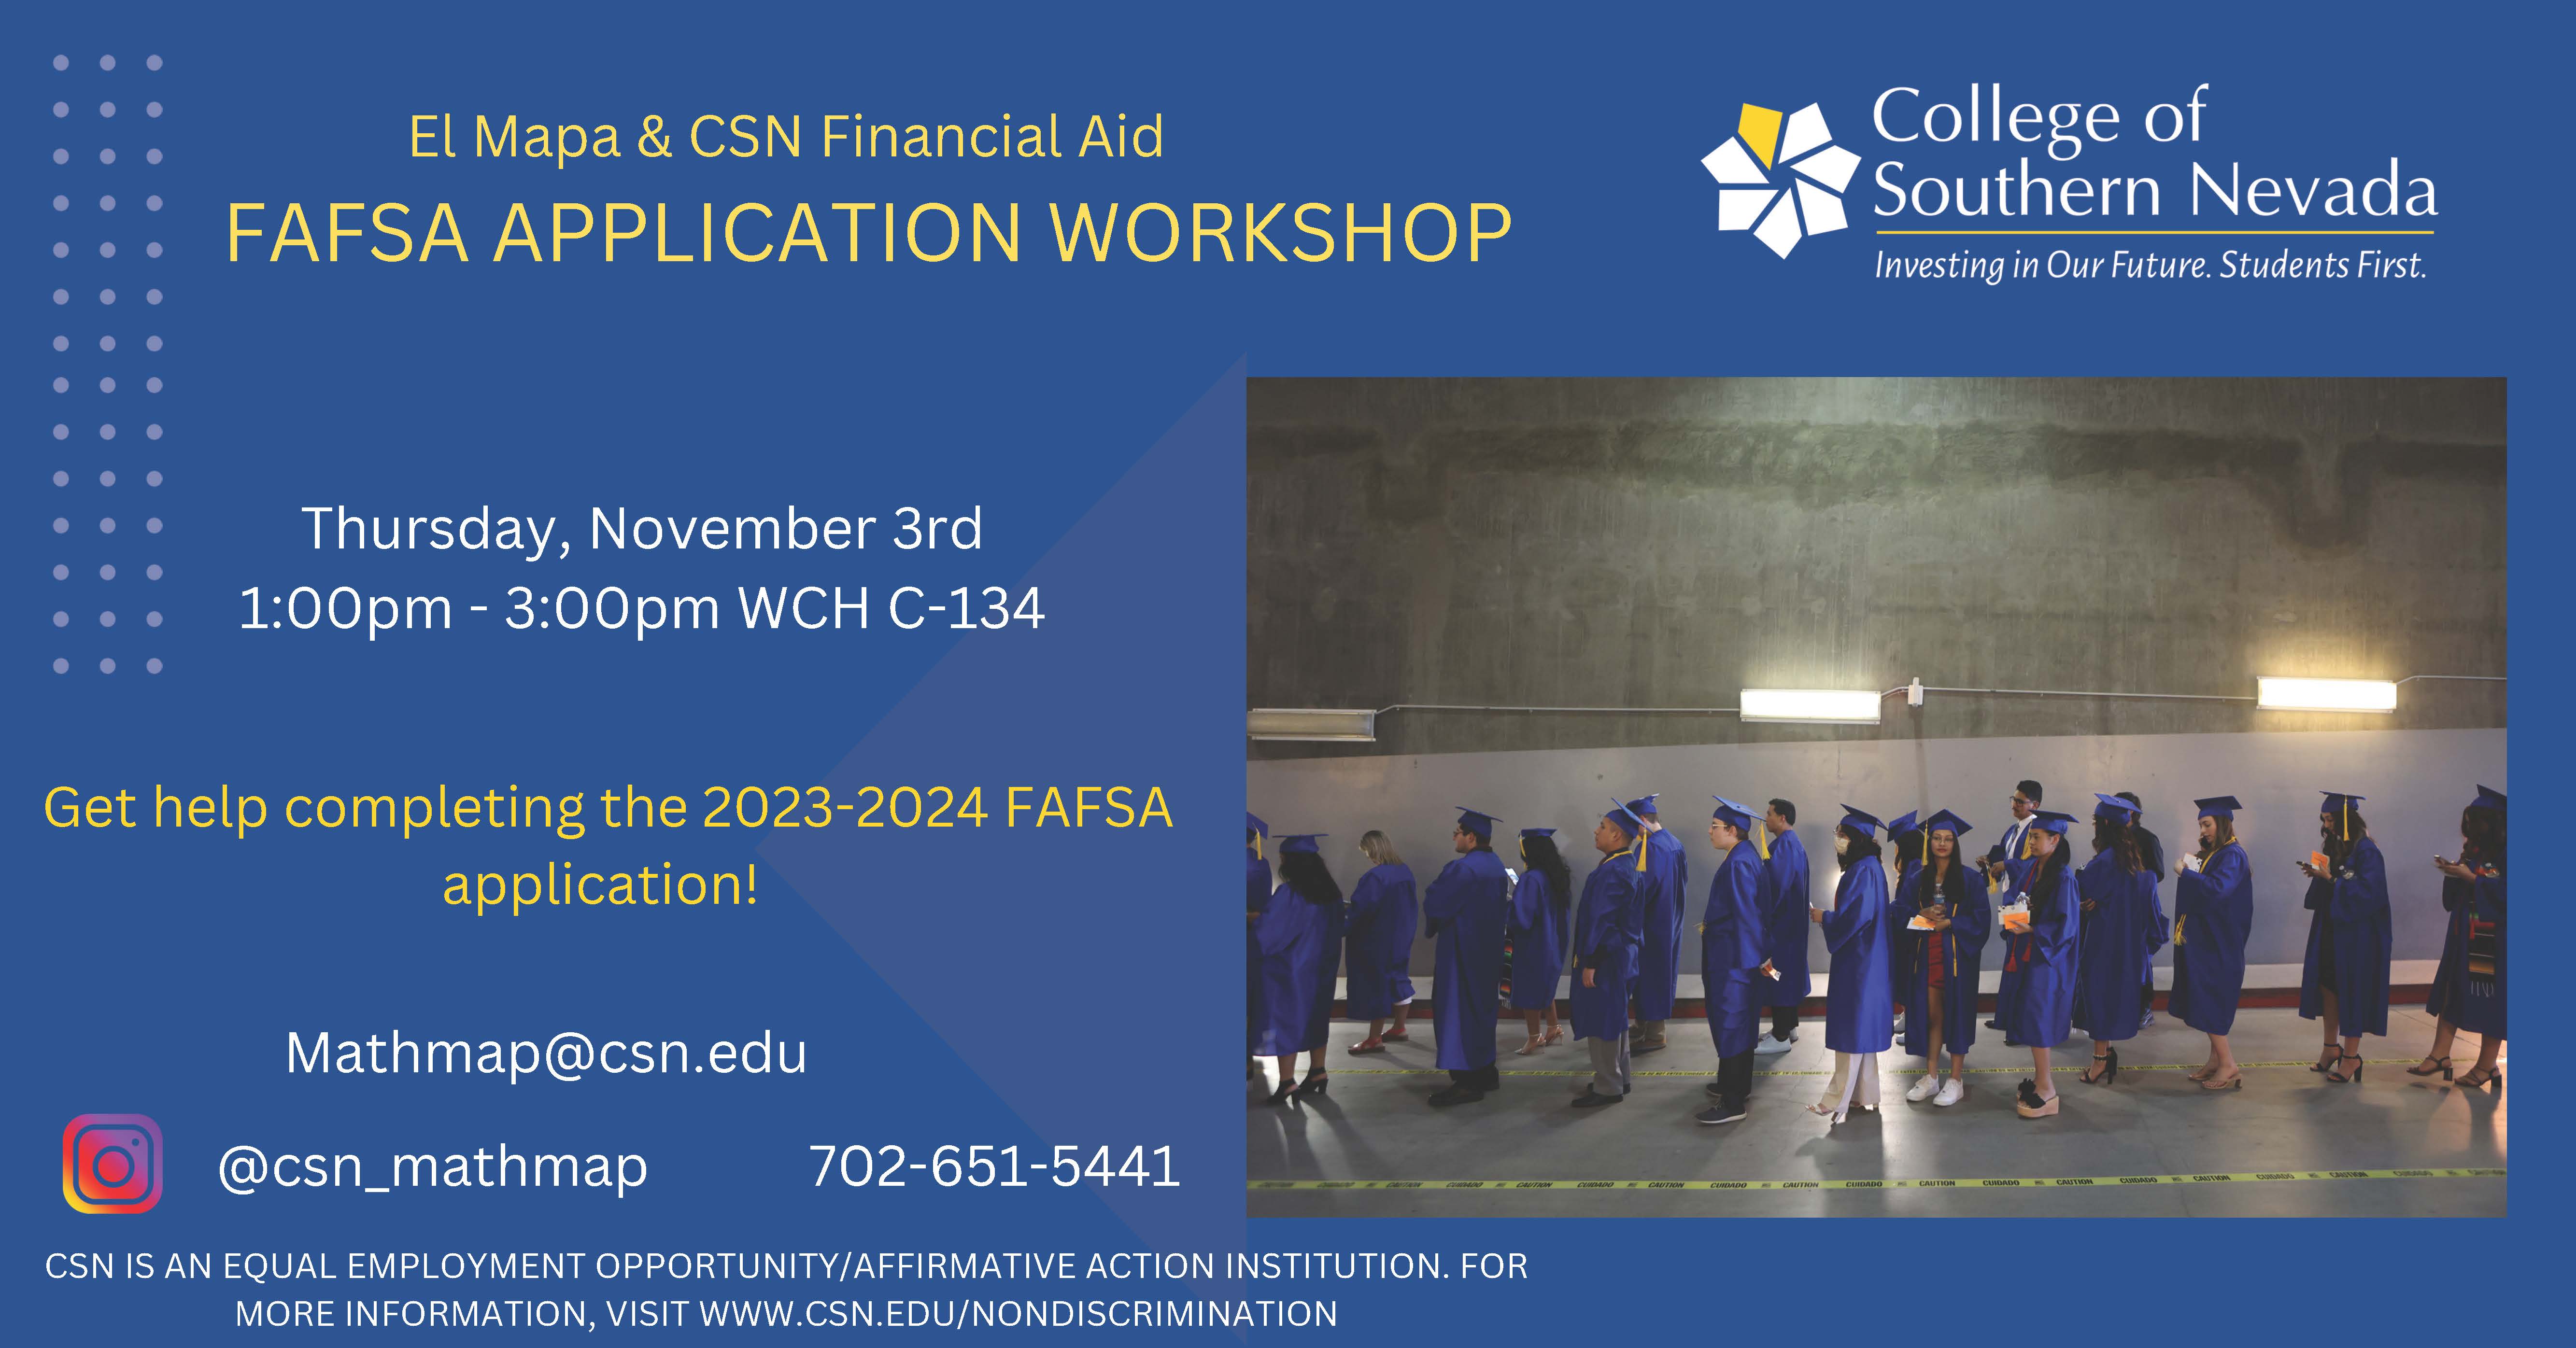 FAFSA Application Workshop on November, 3, 2022.